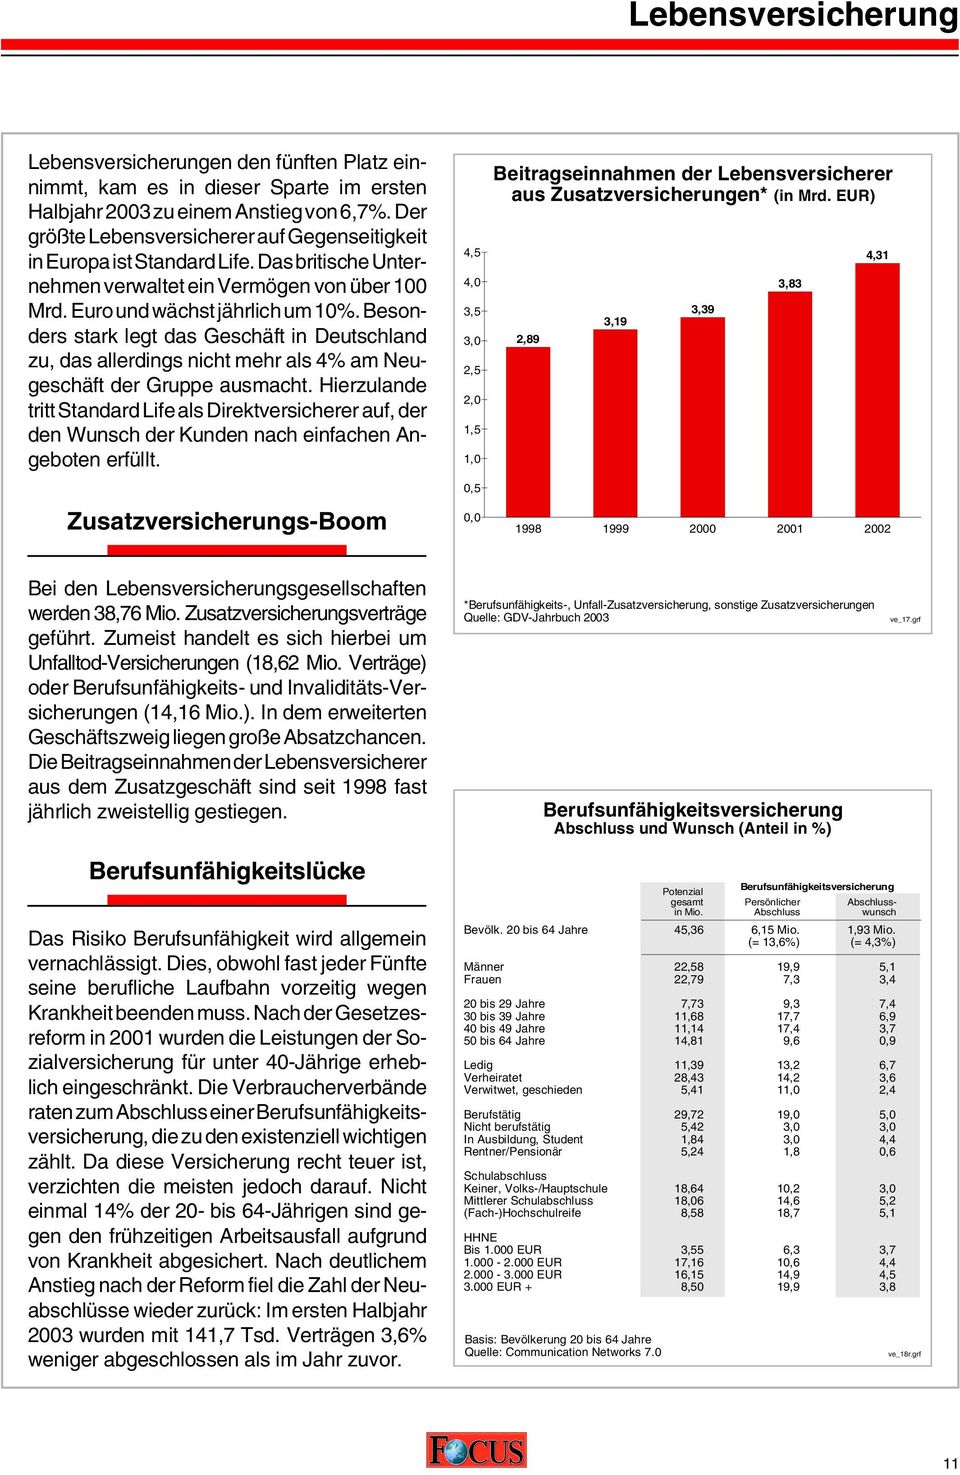 Besonders stark legt das Geschäft in Deutschland zu, das allerdings nicht mehr als 4% am Neugeschäft der Gruppe ausmacht.